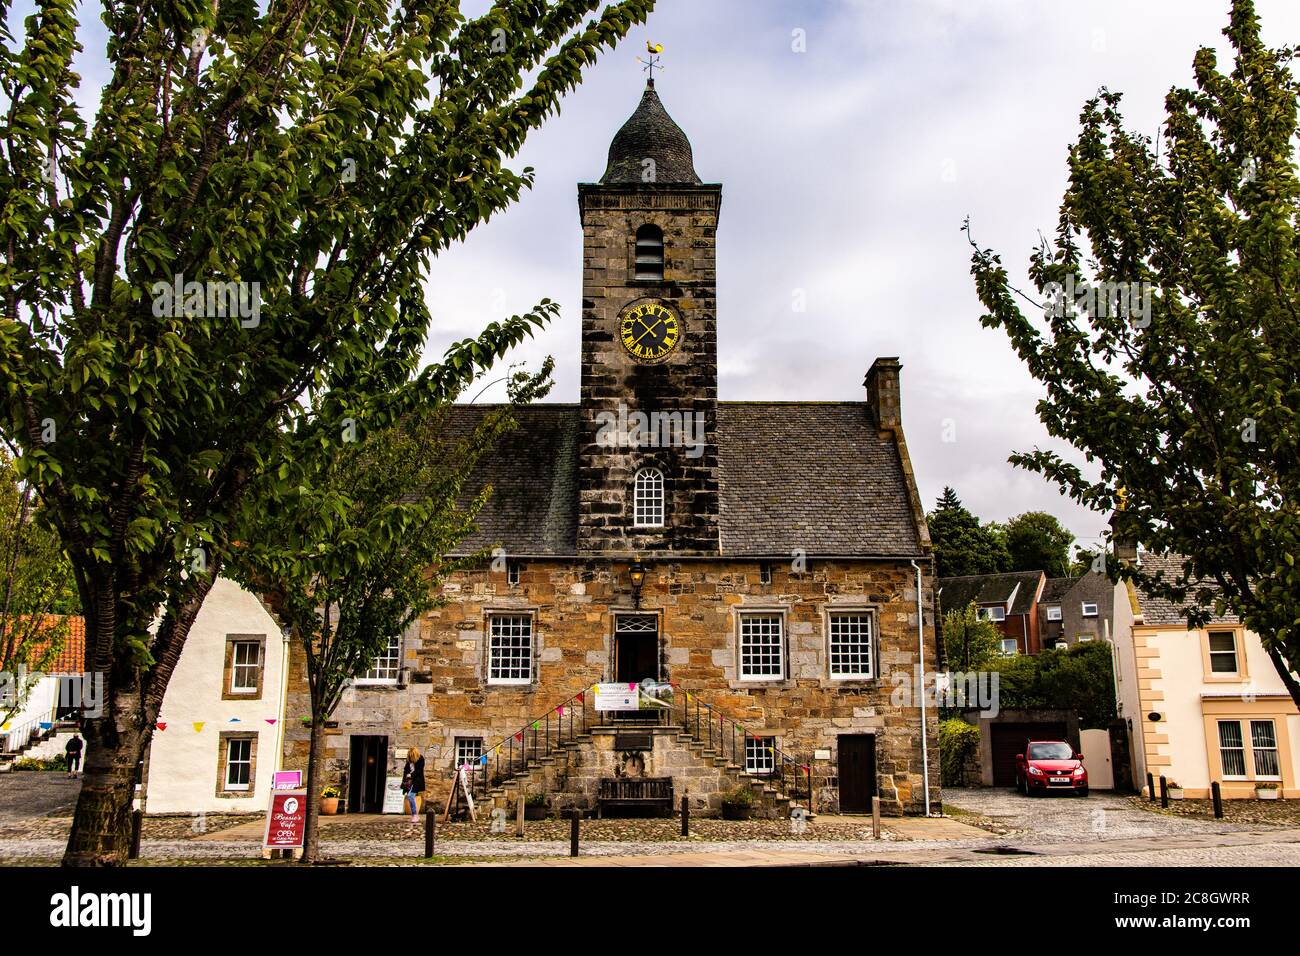 Visita il grazioso villaggio di Culross, appena sopra la città di Edimburgo. Culross è splendida per i suoi vecchi edifici e strade tradizionali. Foto Stock